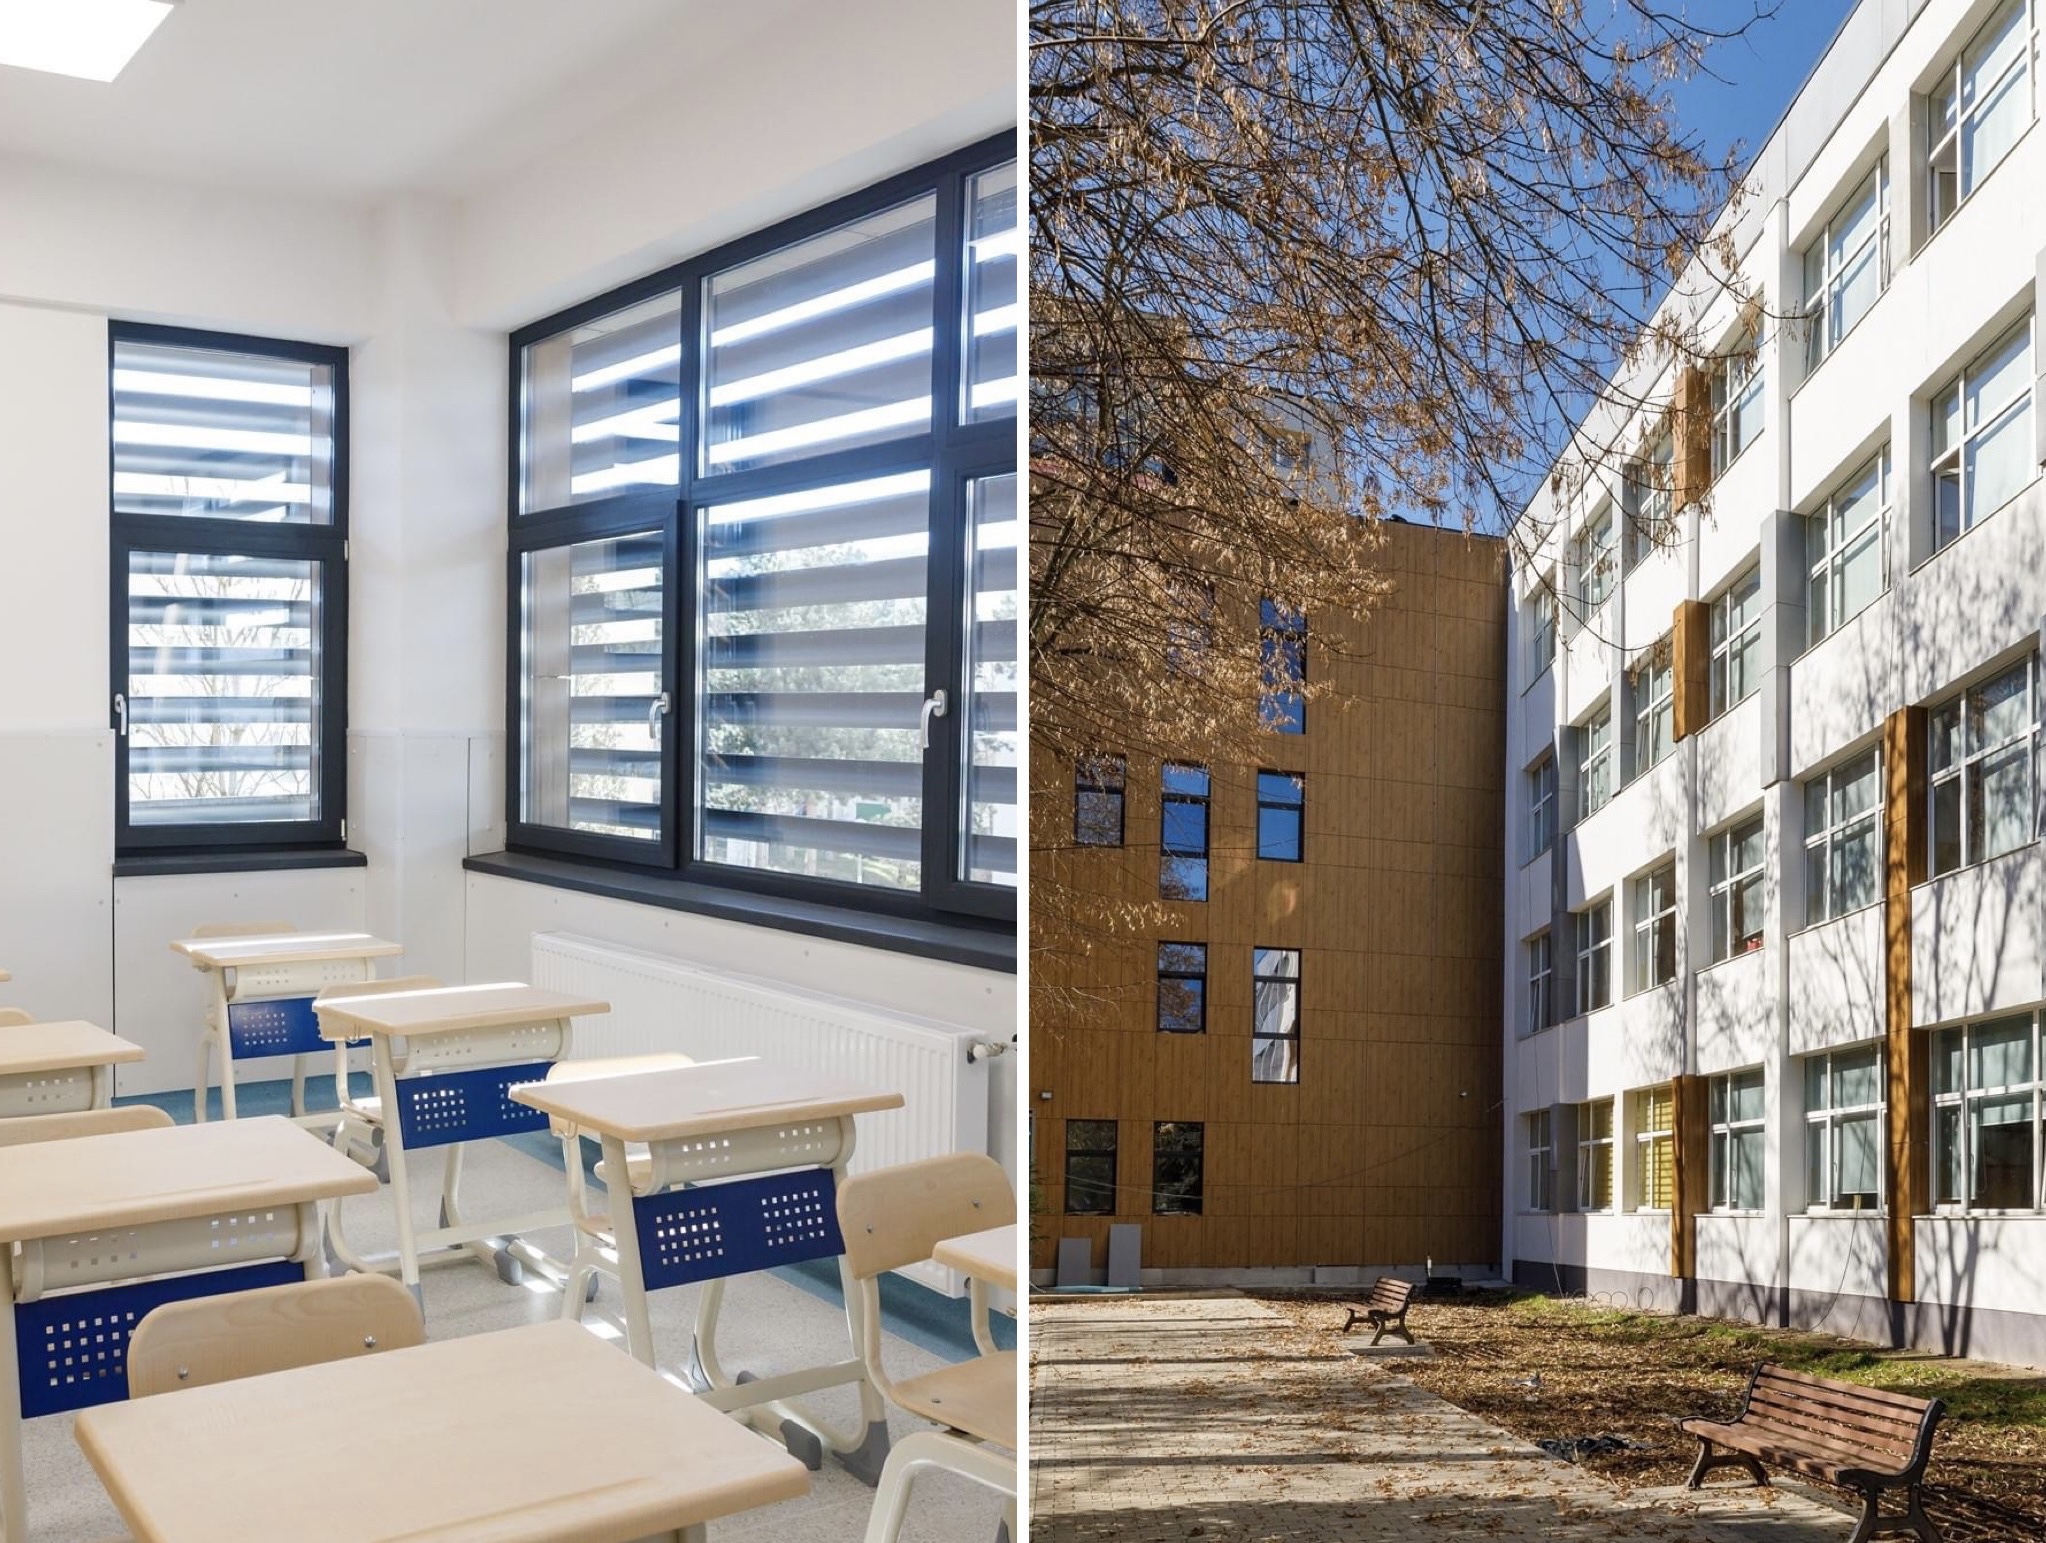 Cum arată o școală gimnazială din Cluj după reabilitarea în valoare de 1,7 milioane Euro. 